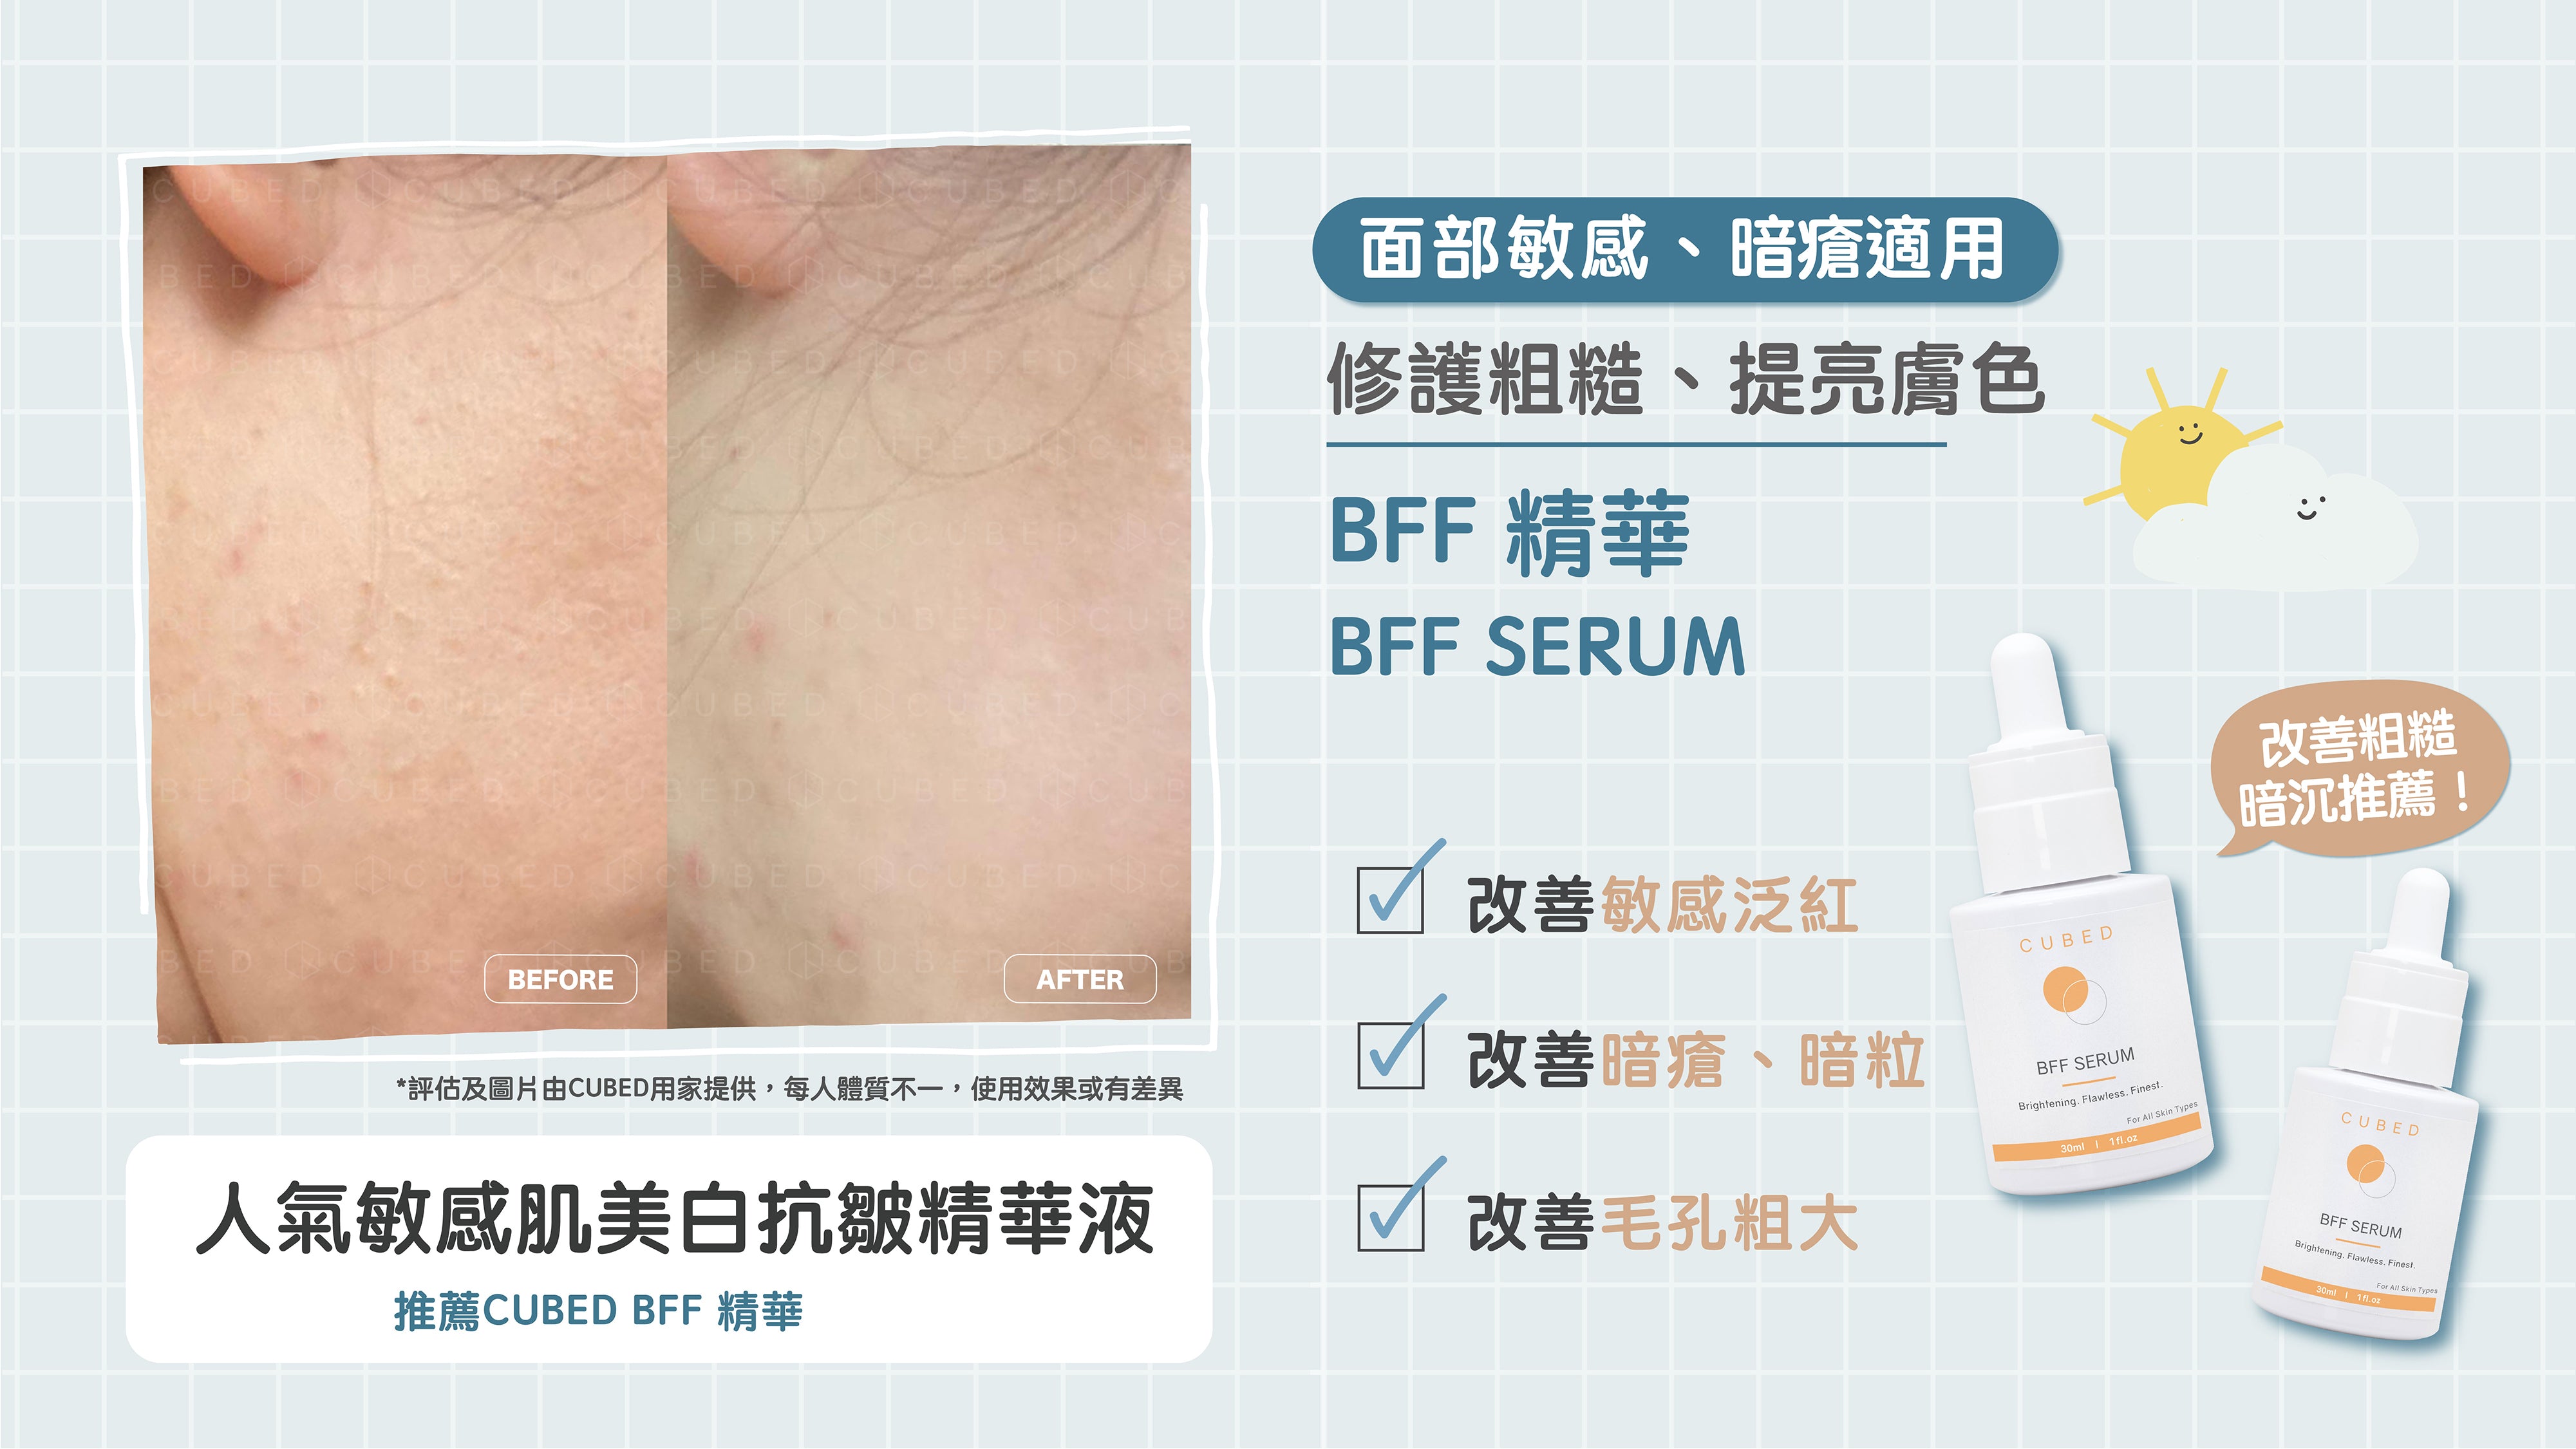  CUBED BFF精華改善敏感泛紅、暗粒、毛孔粗大肌膚